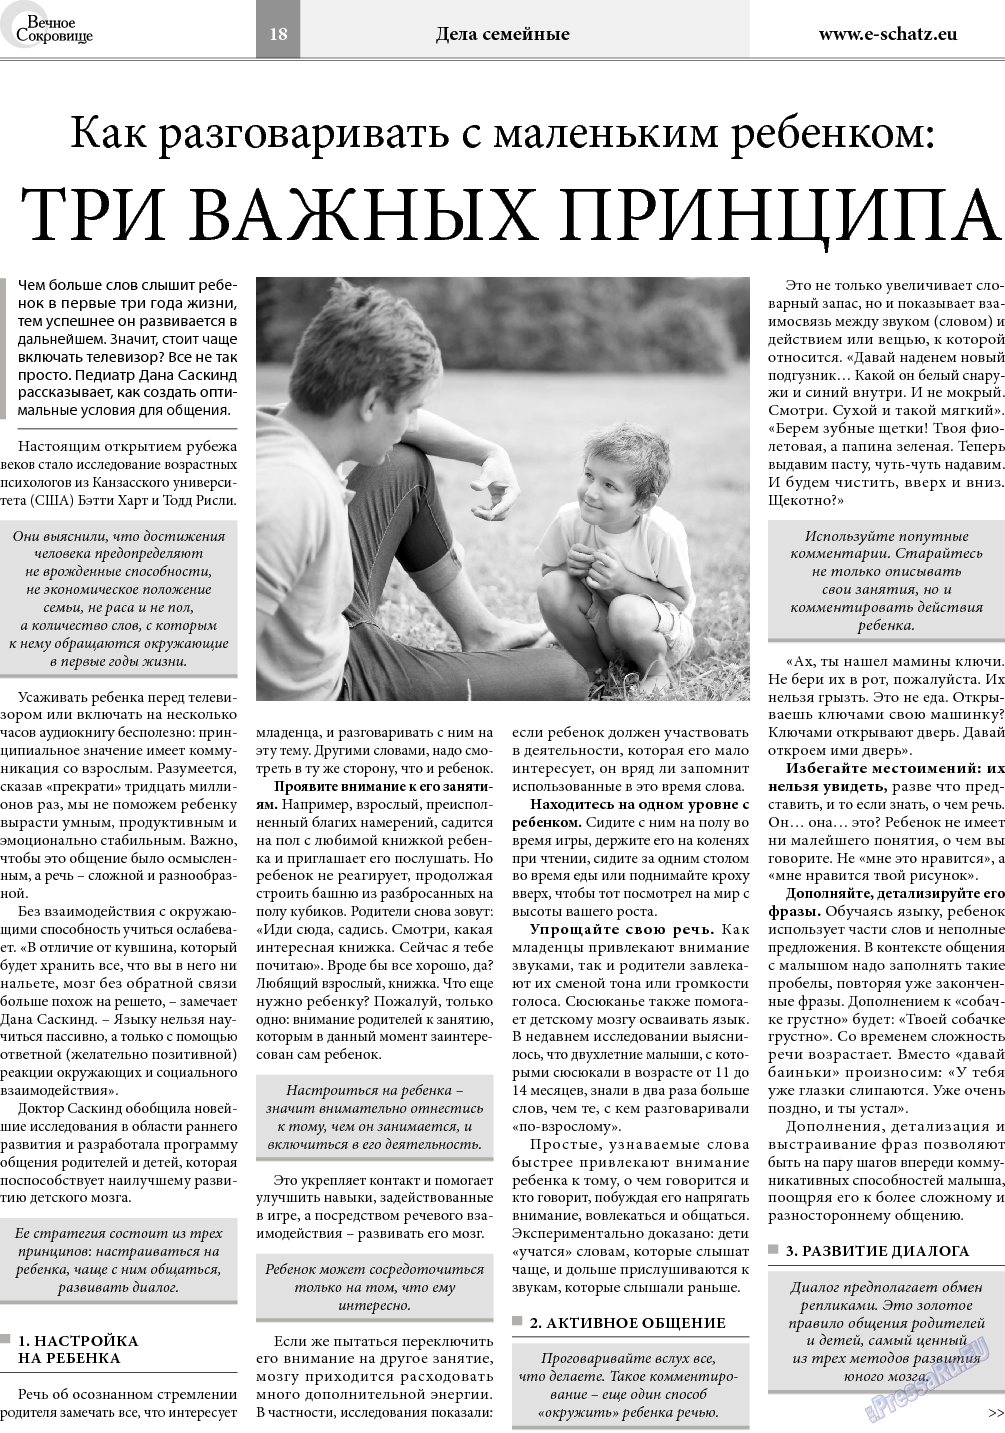 Вечное сокровище, газета. 2018 №2 стр.18